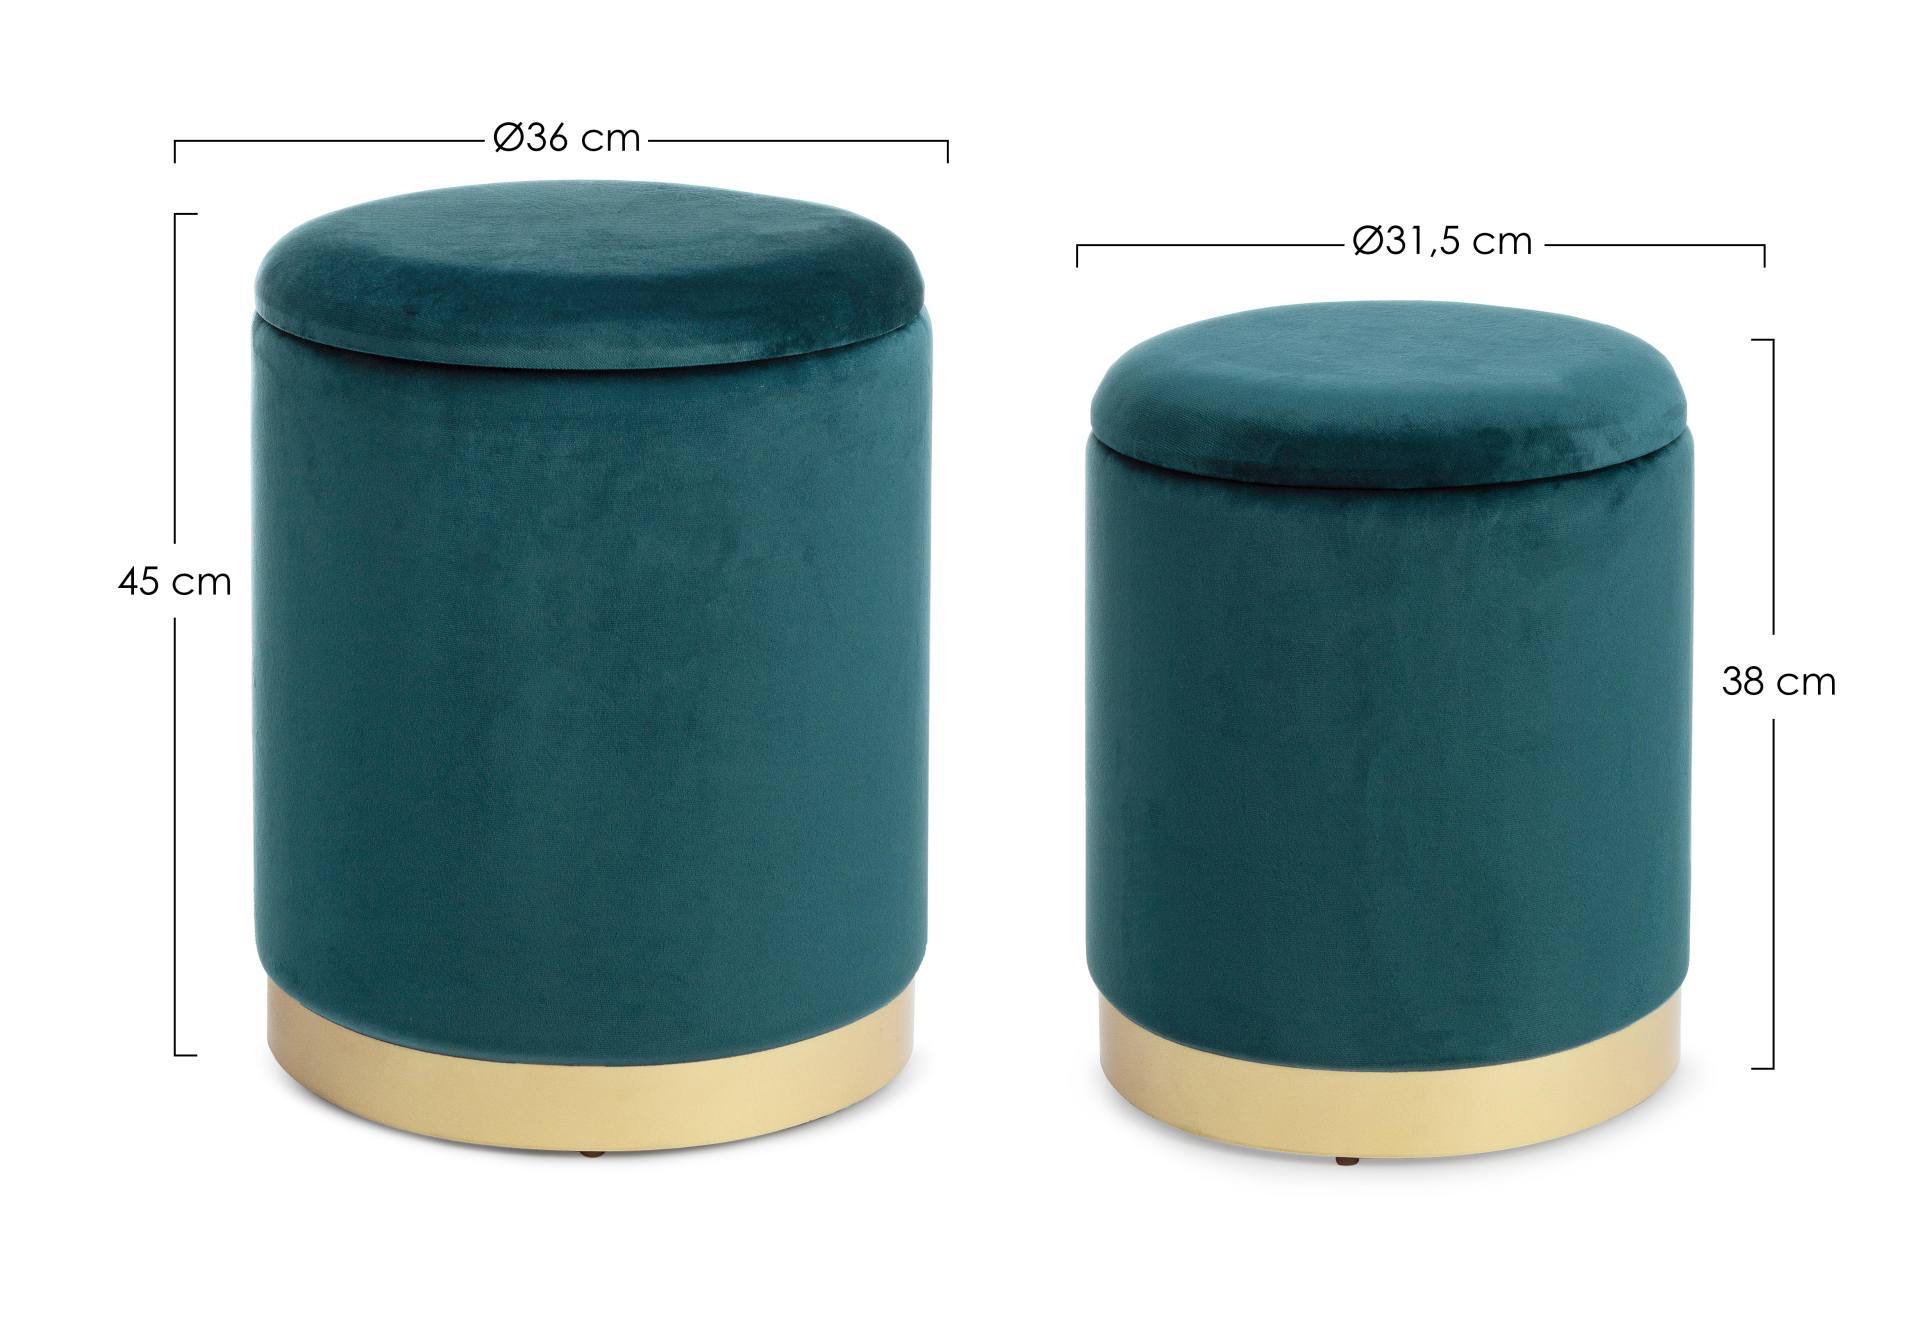 Der Pouf Polina überzeugt mit seinem modernen Design. Erhältlich ist er als 2er-Set. Gefertigt wurde er aus Stoff in Samt-Optik, welcher einen grünen Farbton besitzt. Das Gestell ist aus Metall und hat eine goldene Farbe. Der Durchmesser beträgt 36 cm.